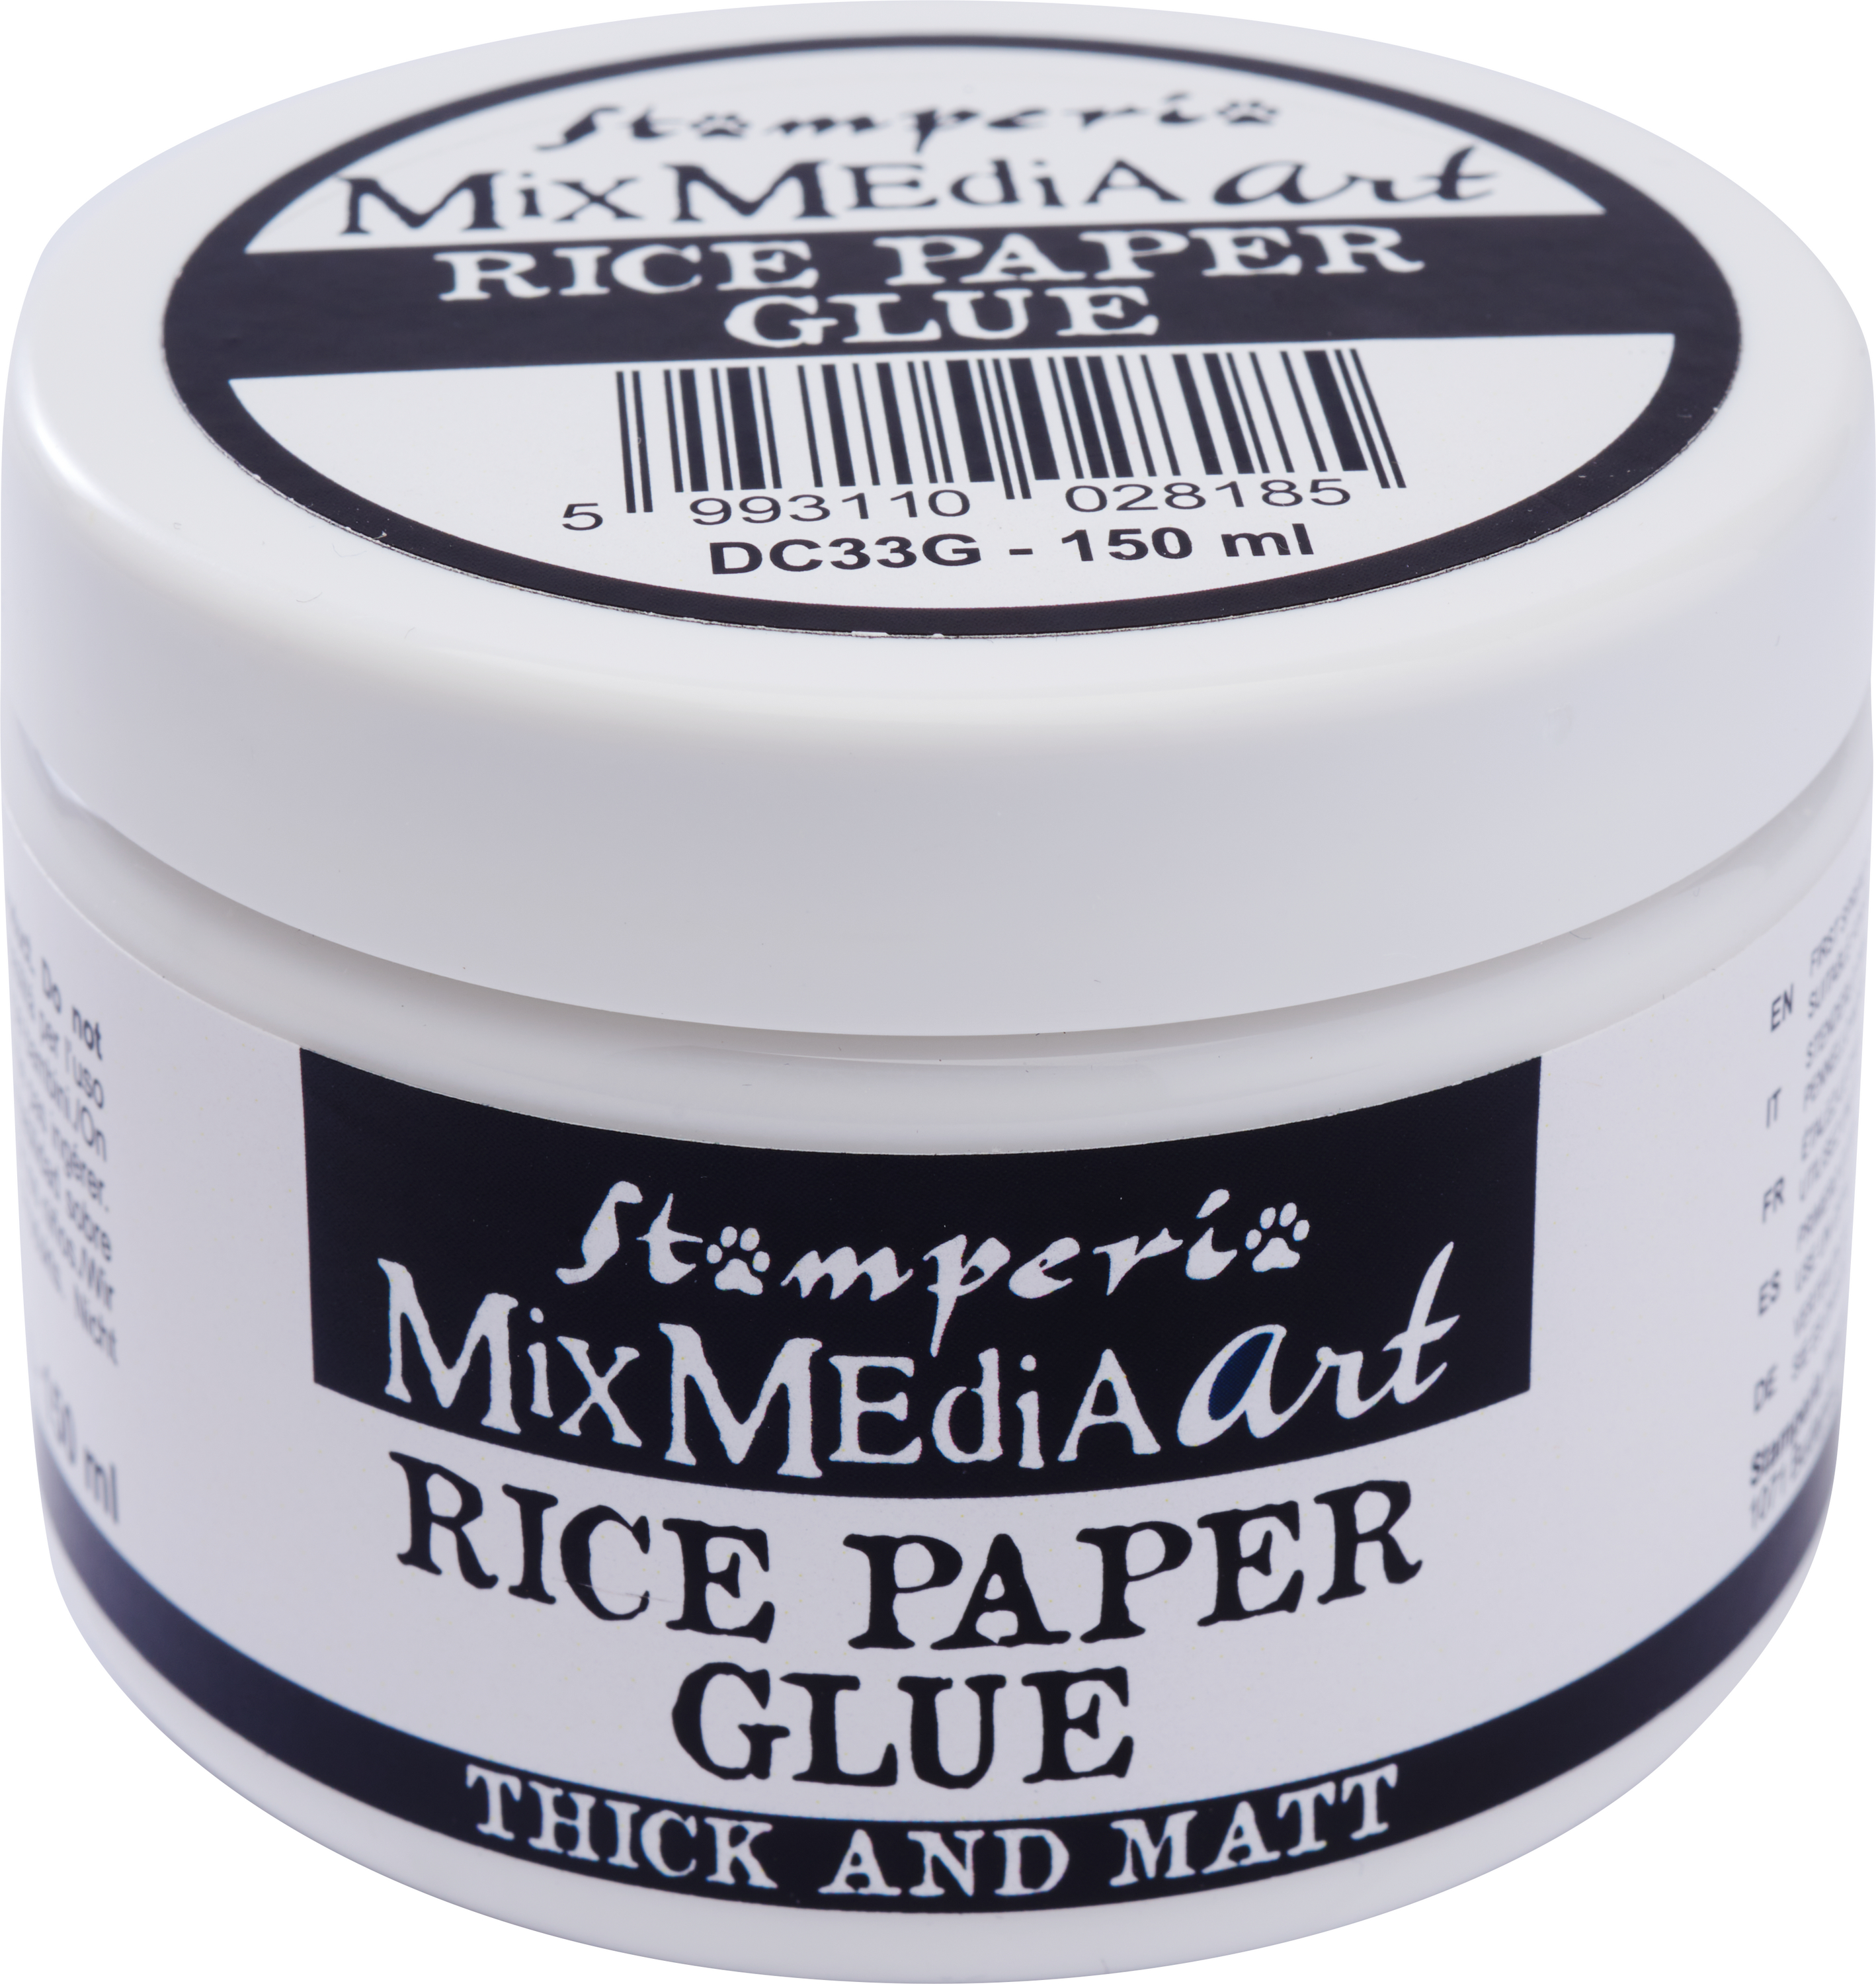 Rice Paper Glue - focus product 